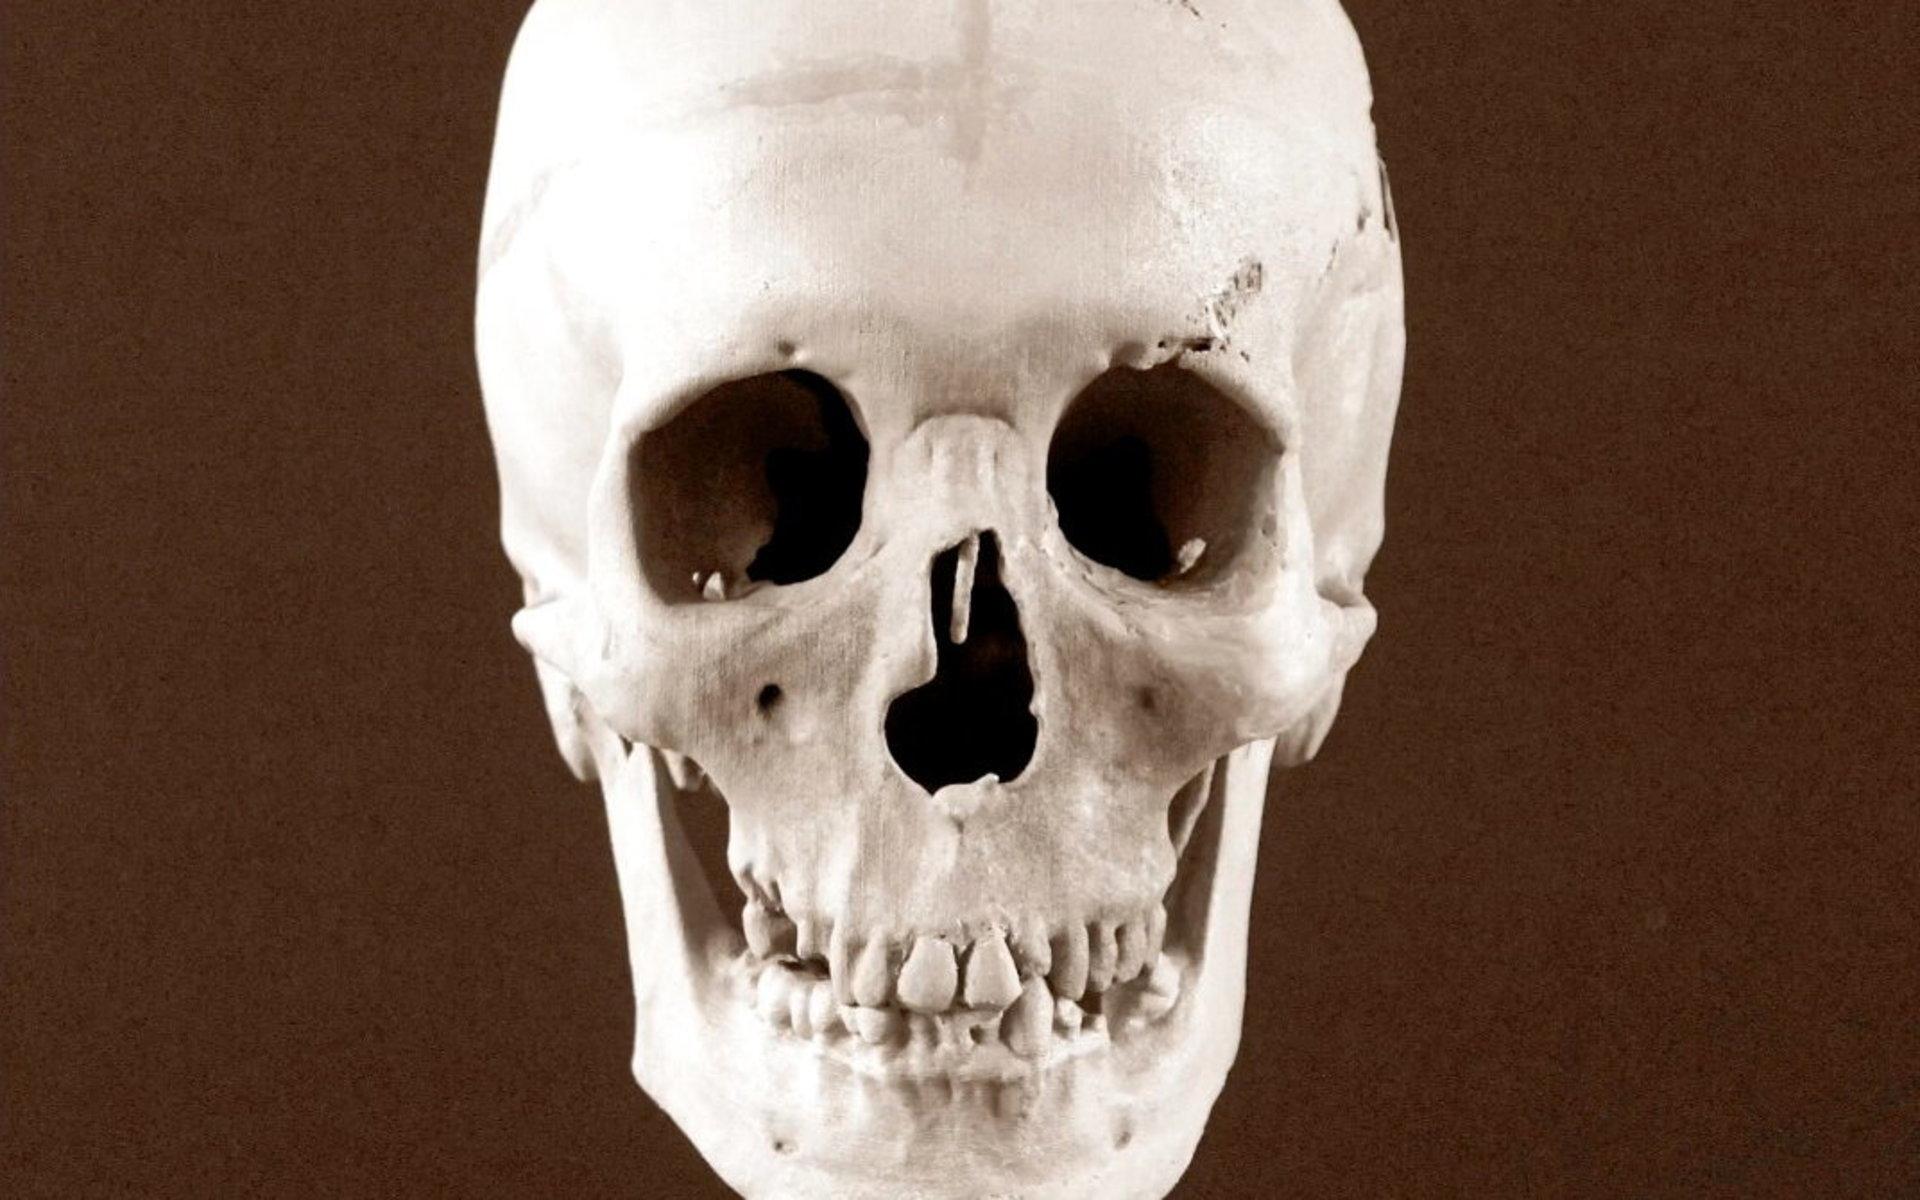 Utgångspunkten är förstås skallen. ”Våra utseenden beror till stor del på hur skallen är formad”, säger Oscar Nilsson. Kraniet är en modell skapad från en 3D-modell av brottsoffrets kvarlevor.